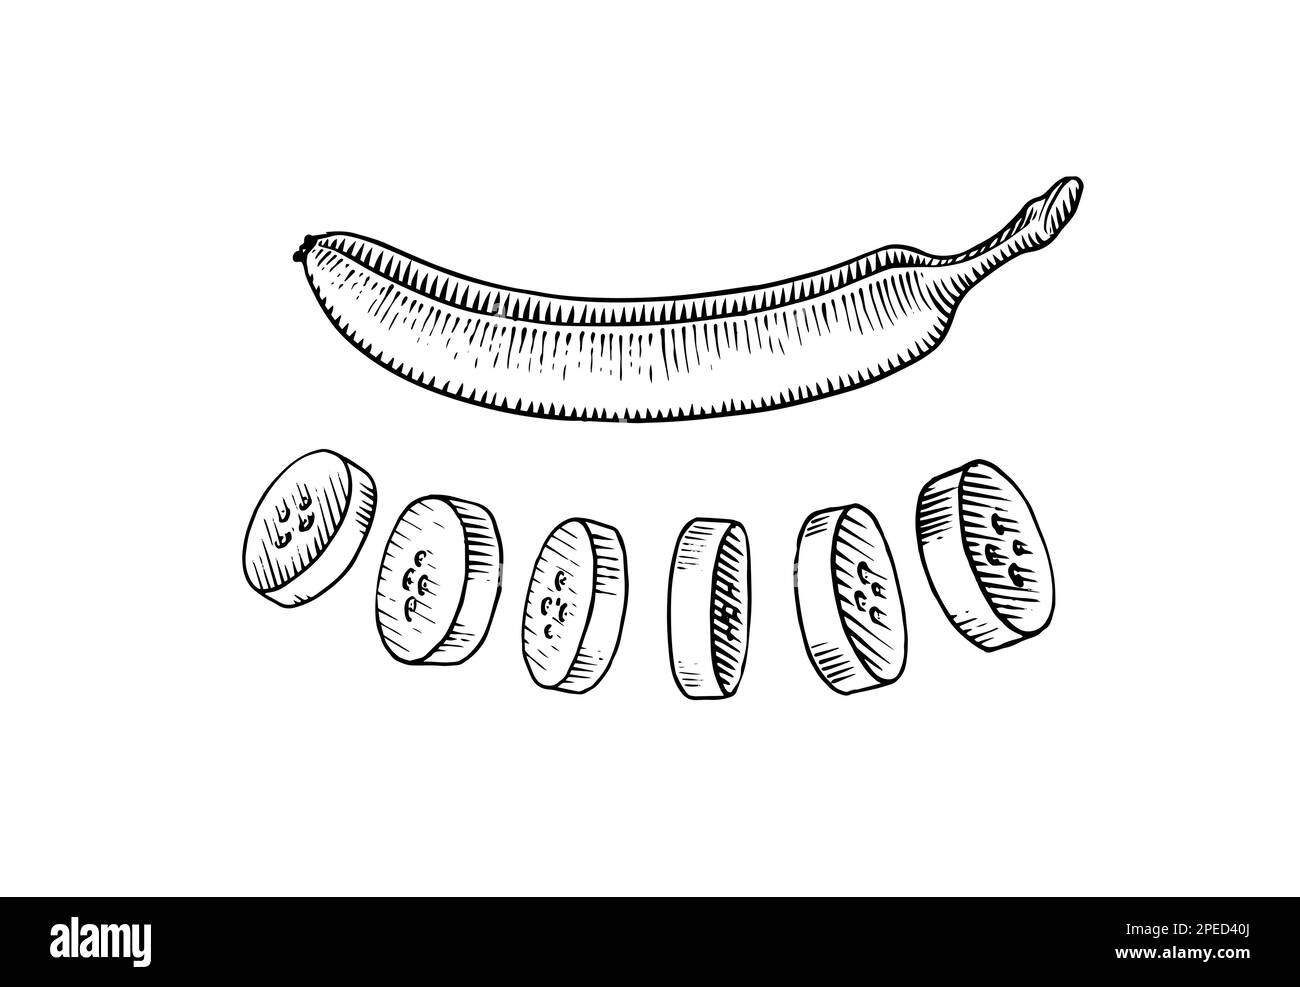 Bananenscheiben. Tropische Früchte. Handgemalt mit Tinte im Vintage-Stil. Lineares Grafikdesign. Detaillierte vegetarische Speisen. Vektordarstellung für Beschriftung Stock Vektor